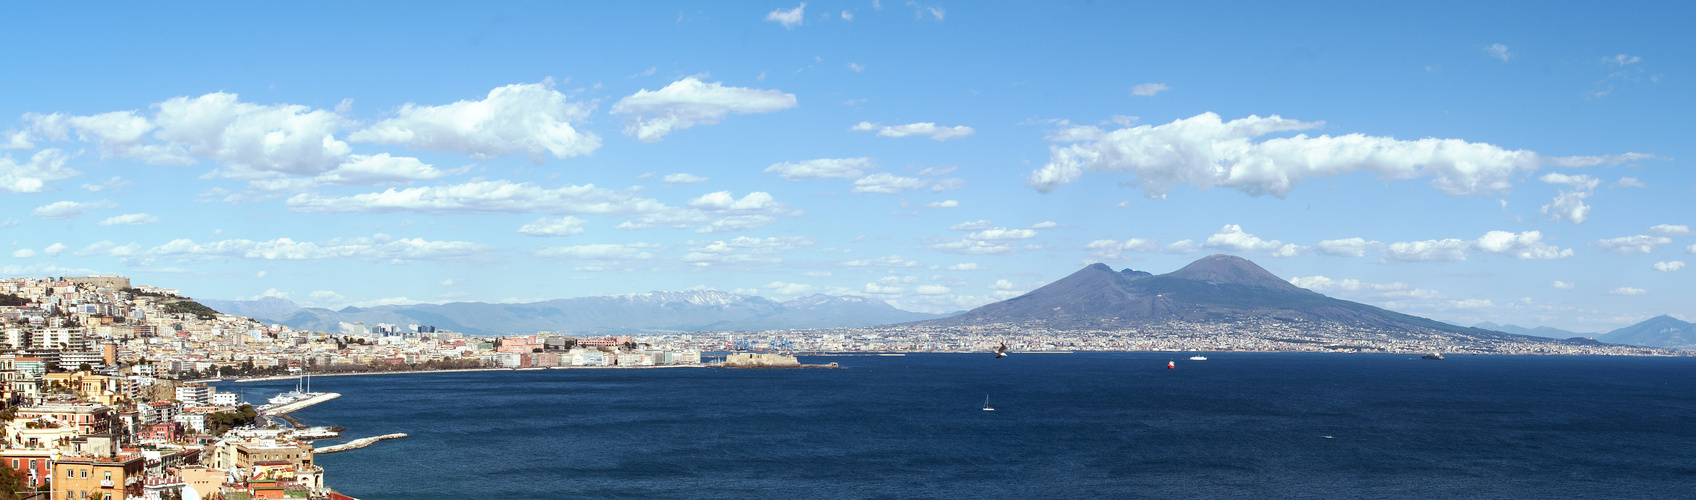 Golf von Neapel mit Vesuv